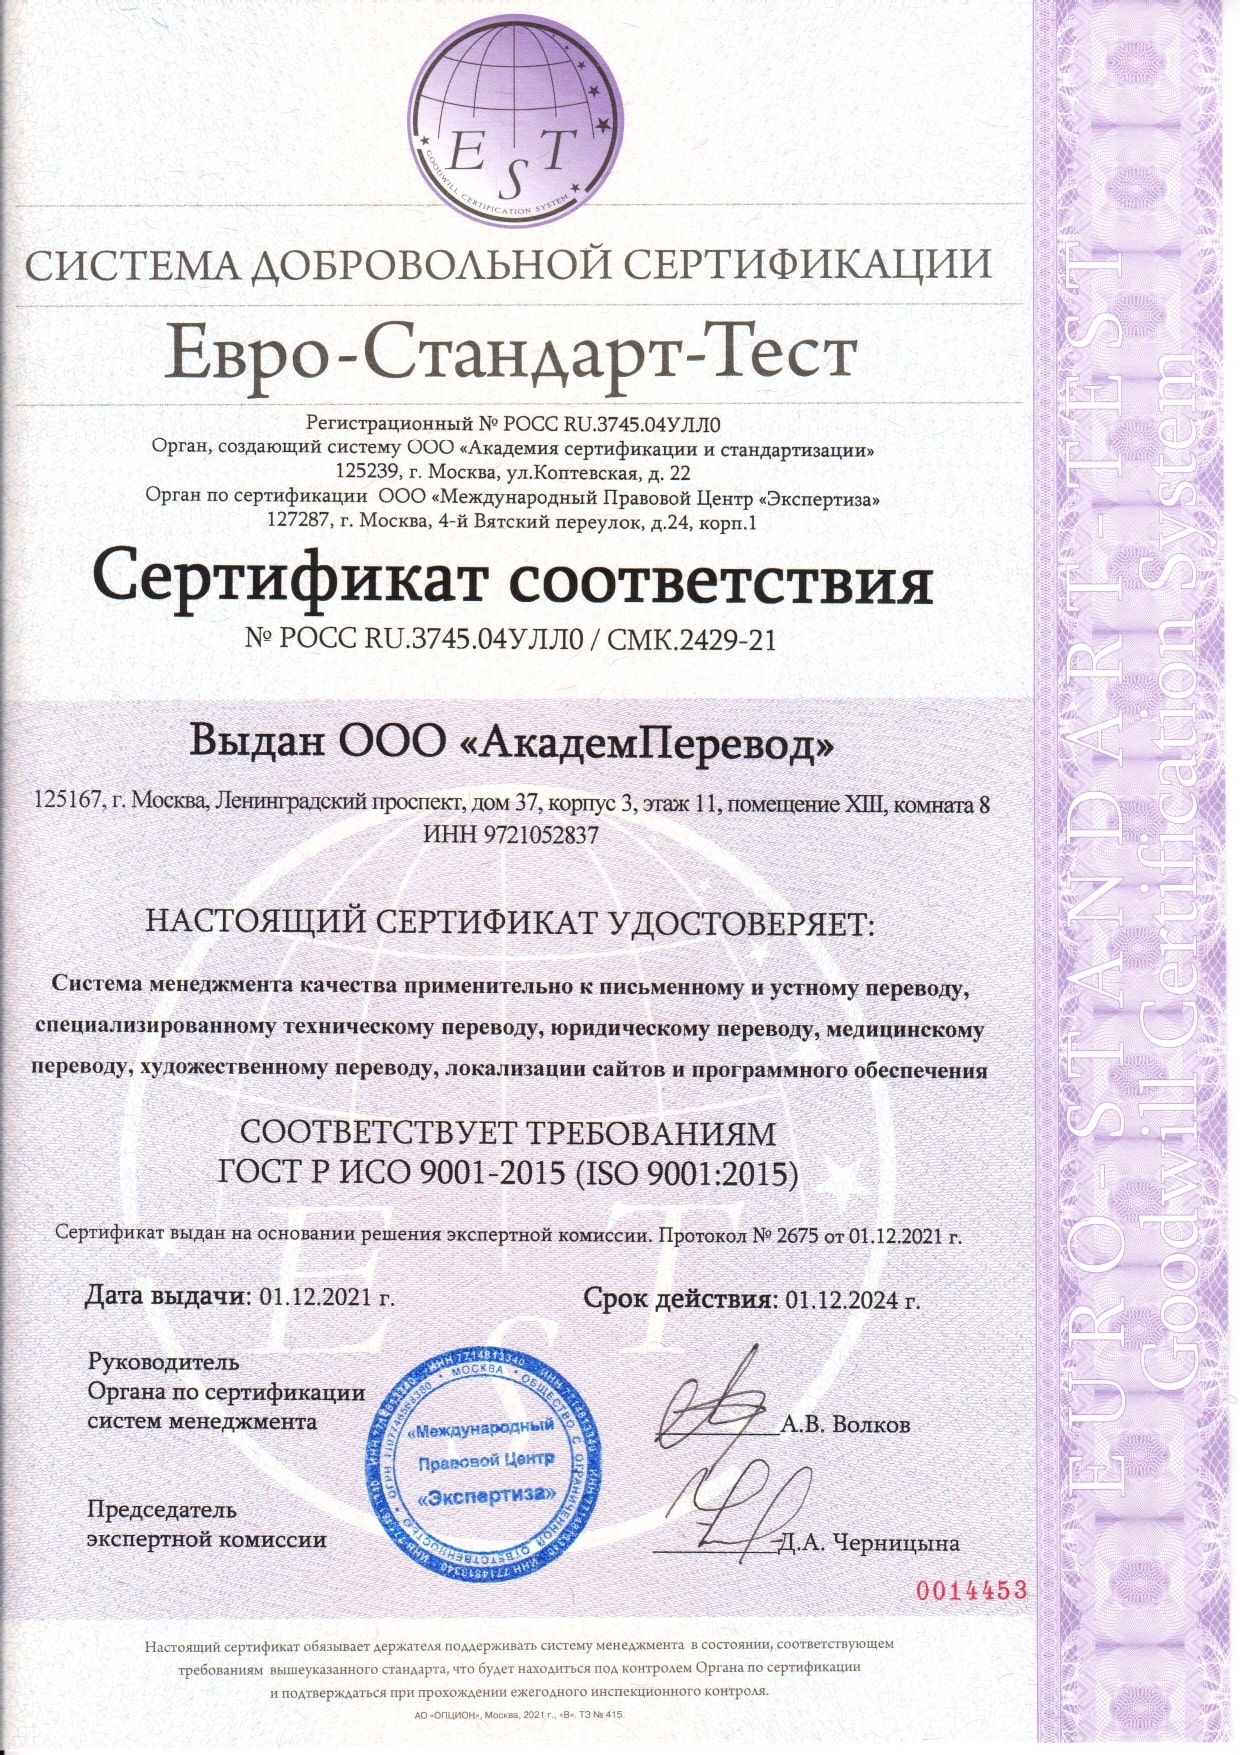 Сертификат ГОСТ Р ИСО 9001-2015 (ISO 9001:2015) «Система контроля качества устного и письменного перевода»